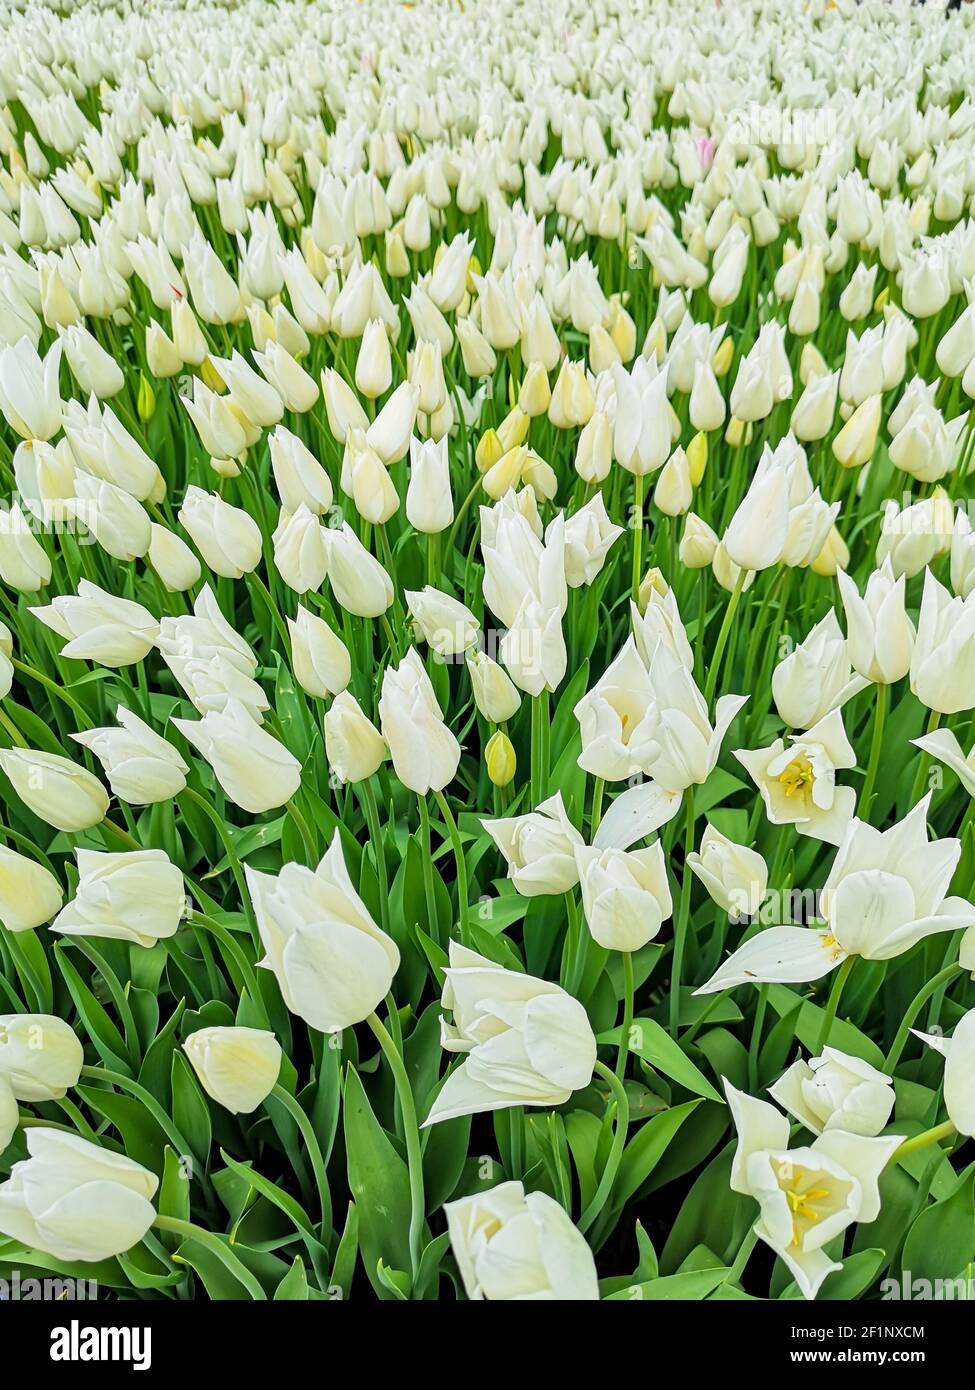 Nombreux tulipes romantiques et de saison. Un champ de fleurs blanches. Bouquet cadeau de printemps. Magnifique fond naturel à la lumière du jour Banque D'Images